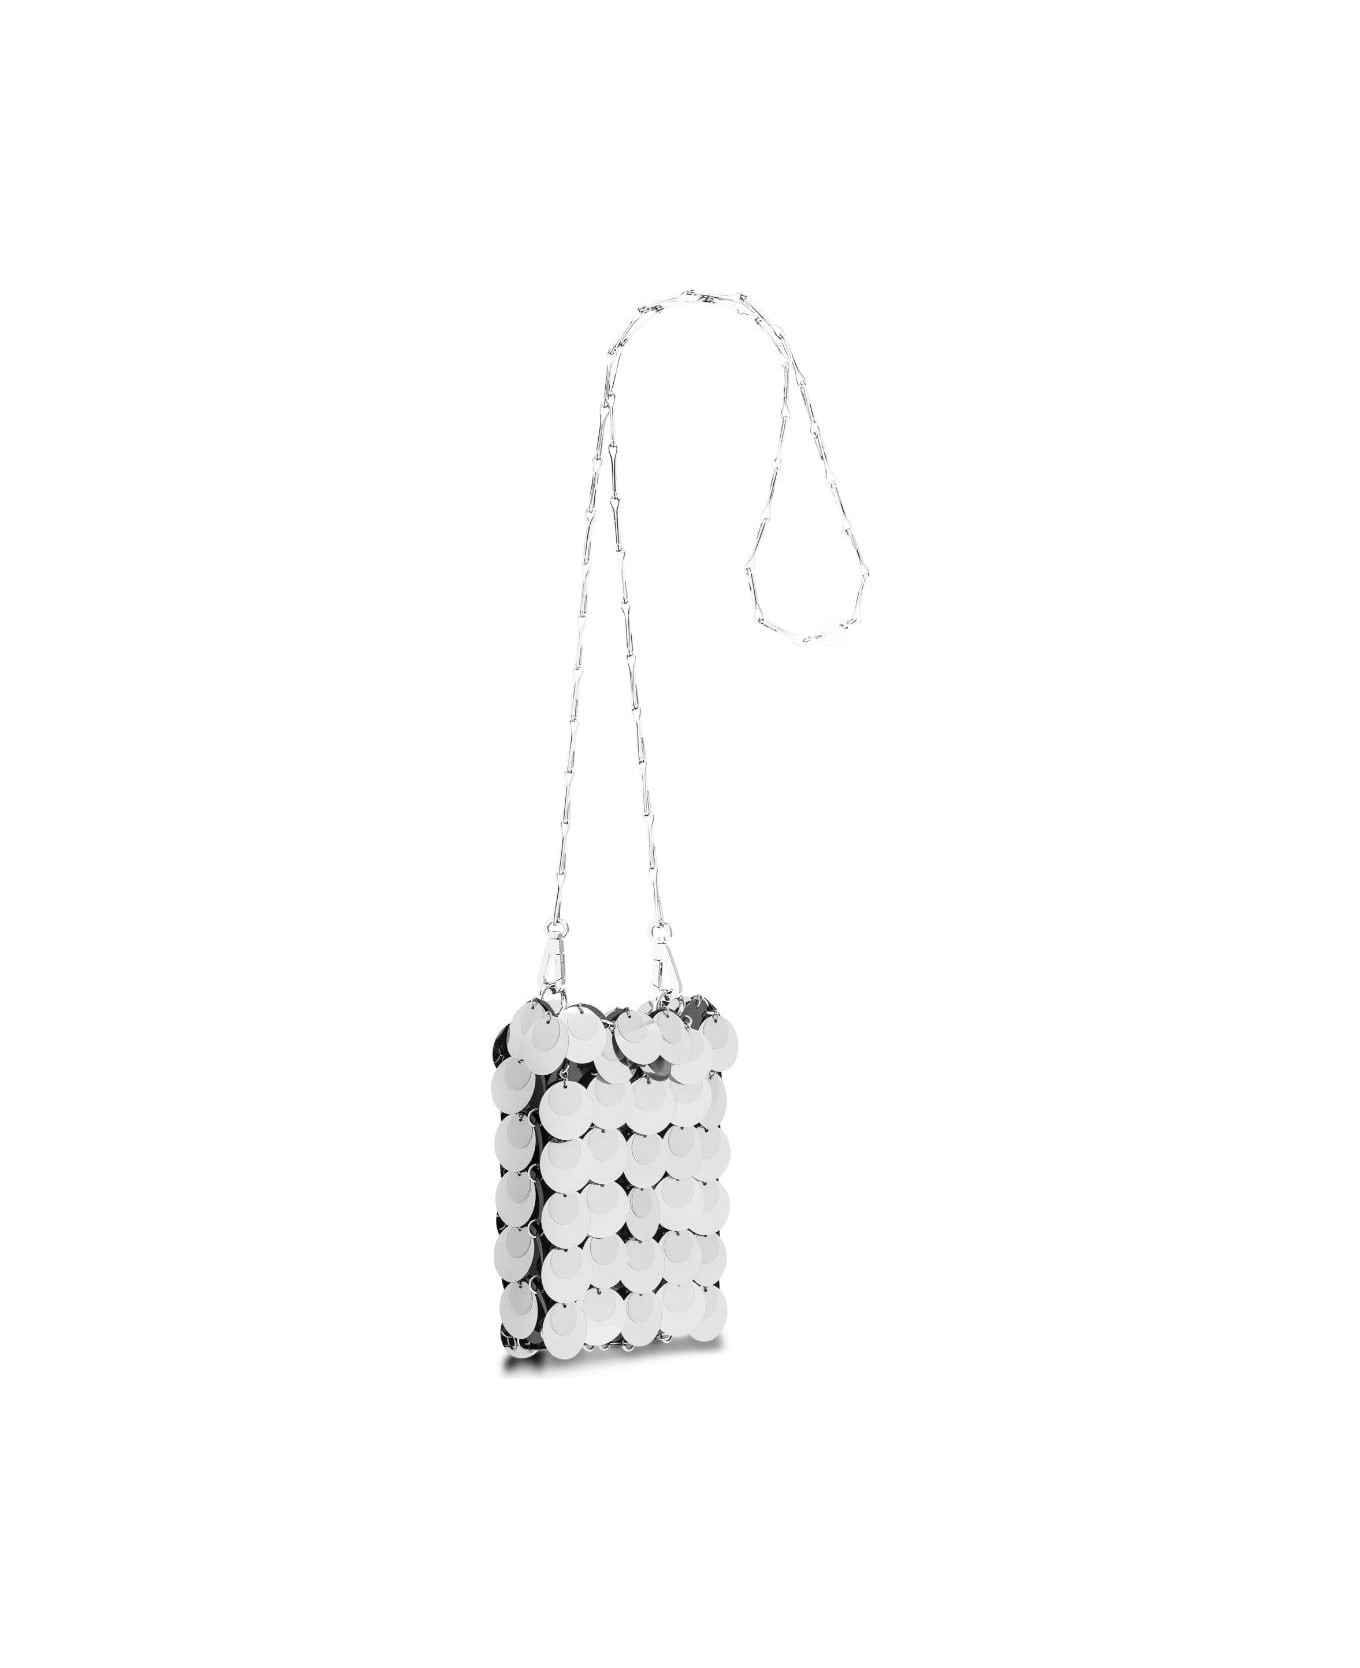 Paco Rabanne Sac Soir Sparkle Mini Bag In Silver - Silver